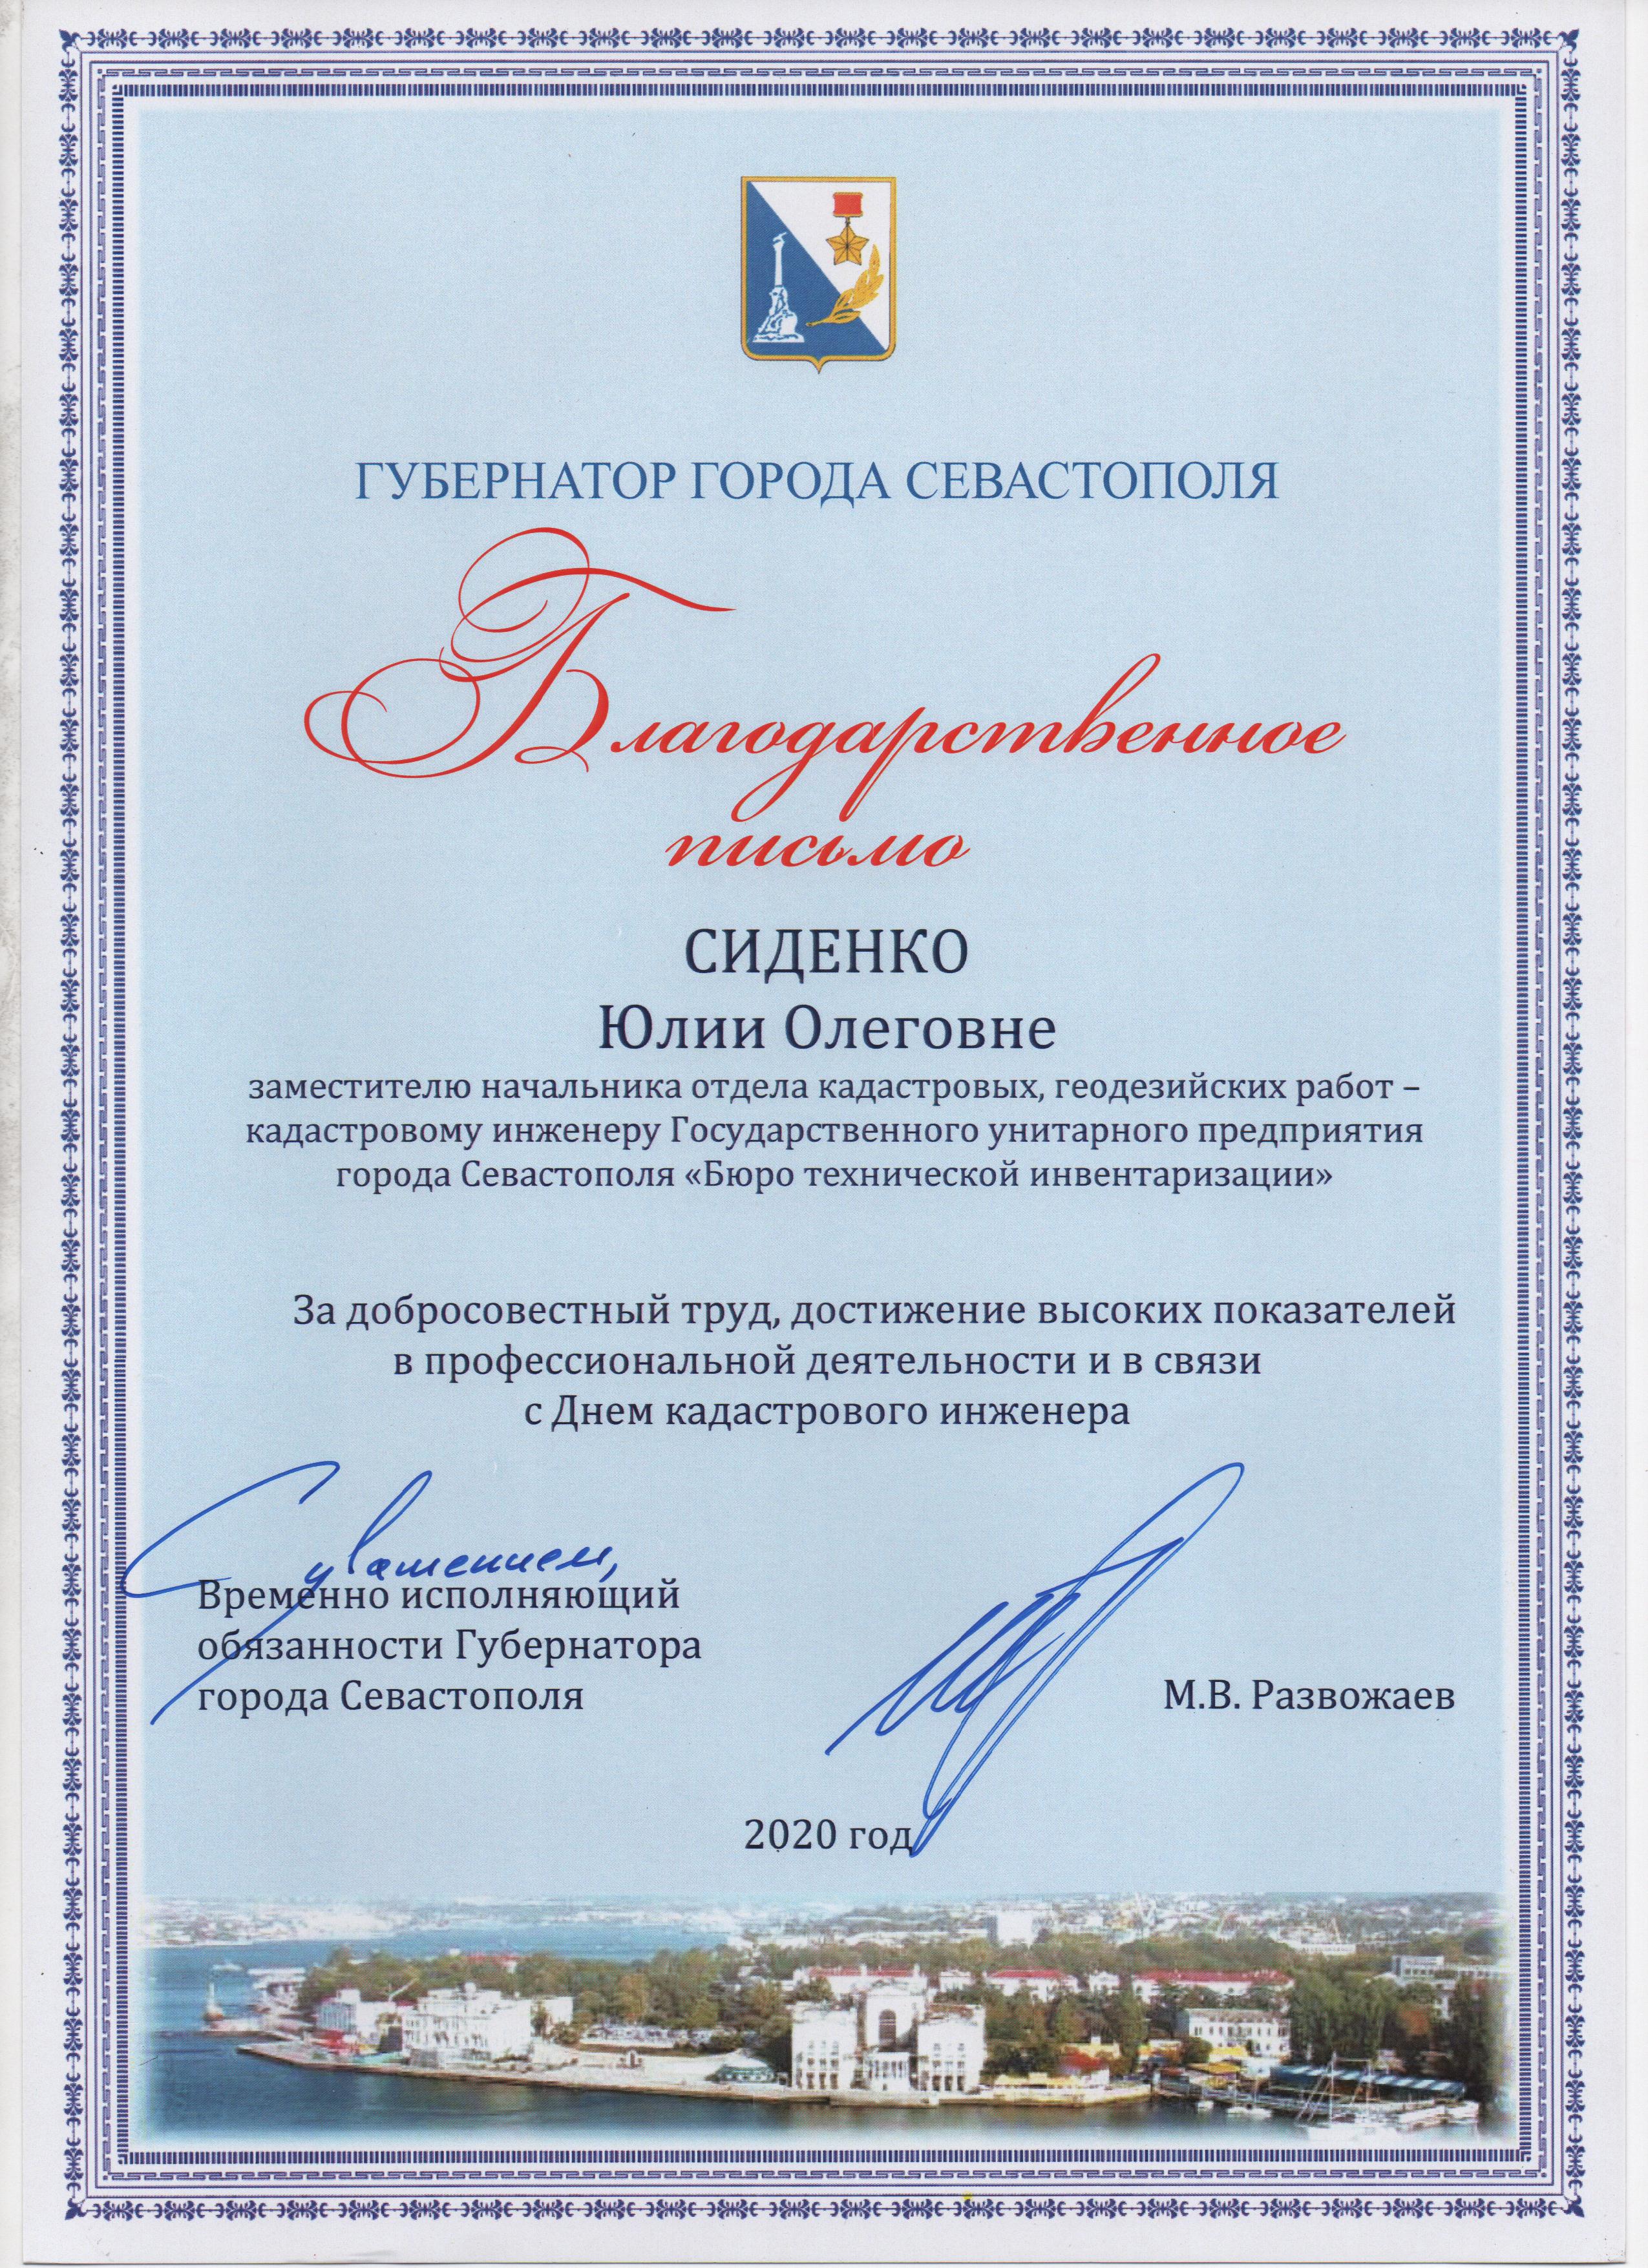 Благодарственное письмо Сиденко Ю.О. от Врио Губернатора города Севастополя 2020